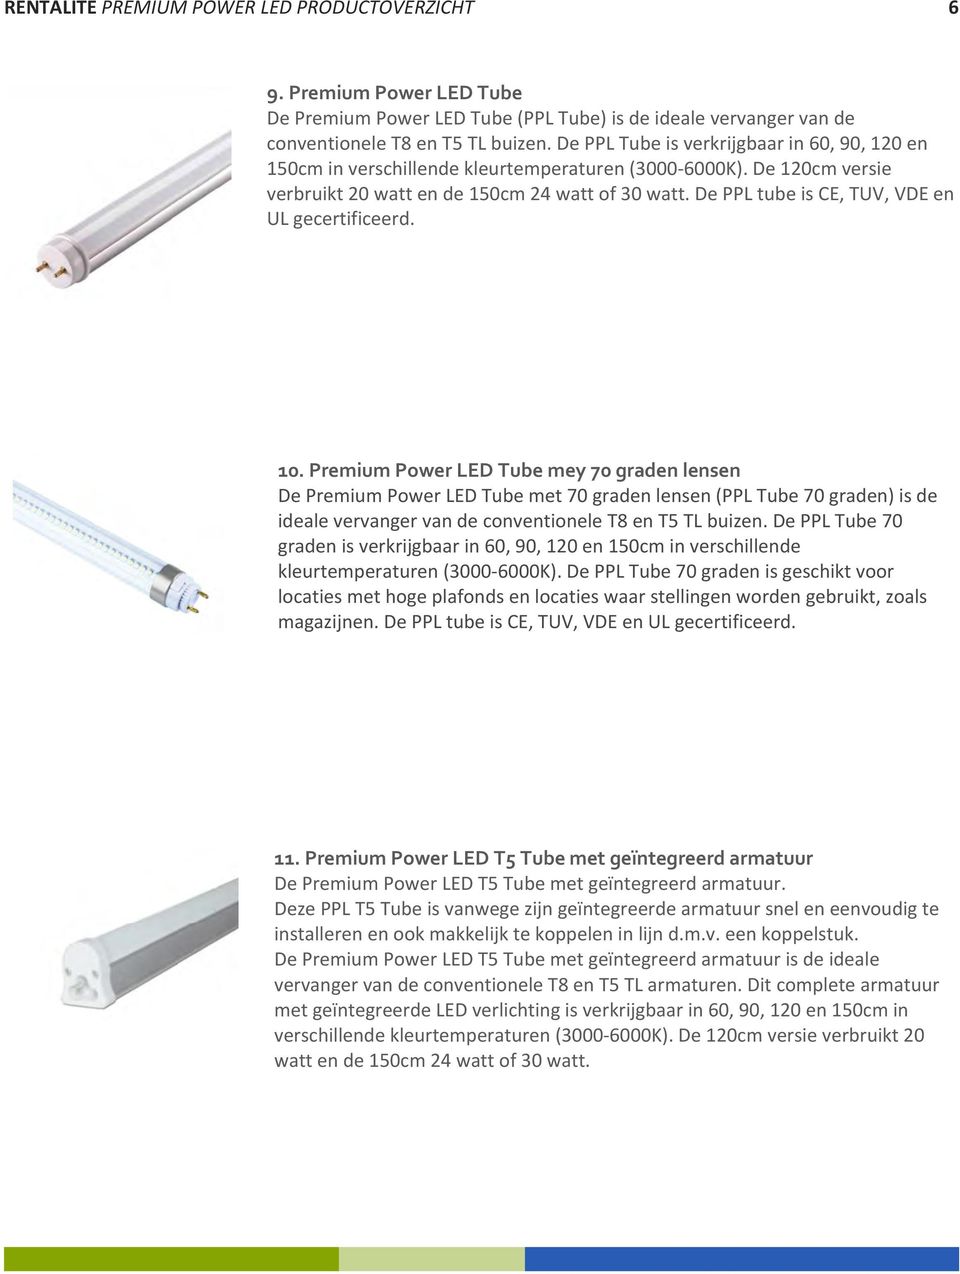 De PPL tube is CE, TUV, VDE en UL gecertificeerd. 10.